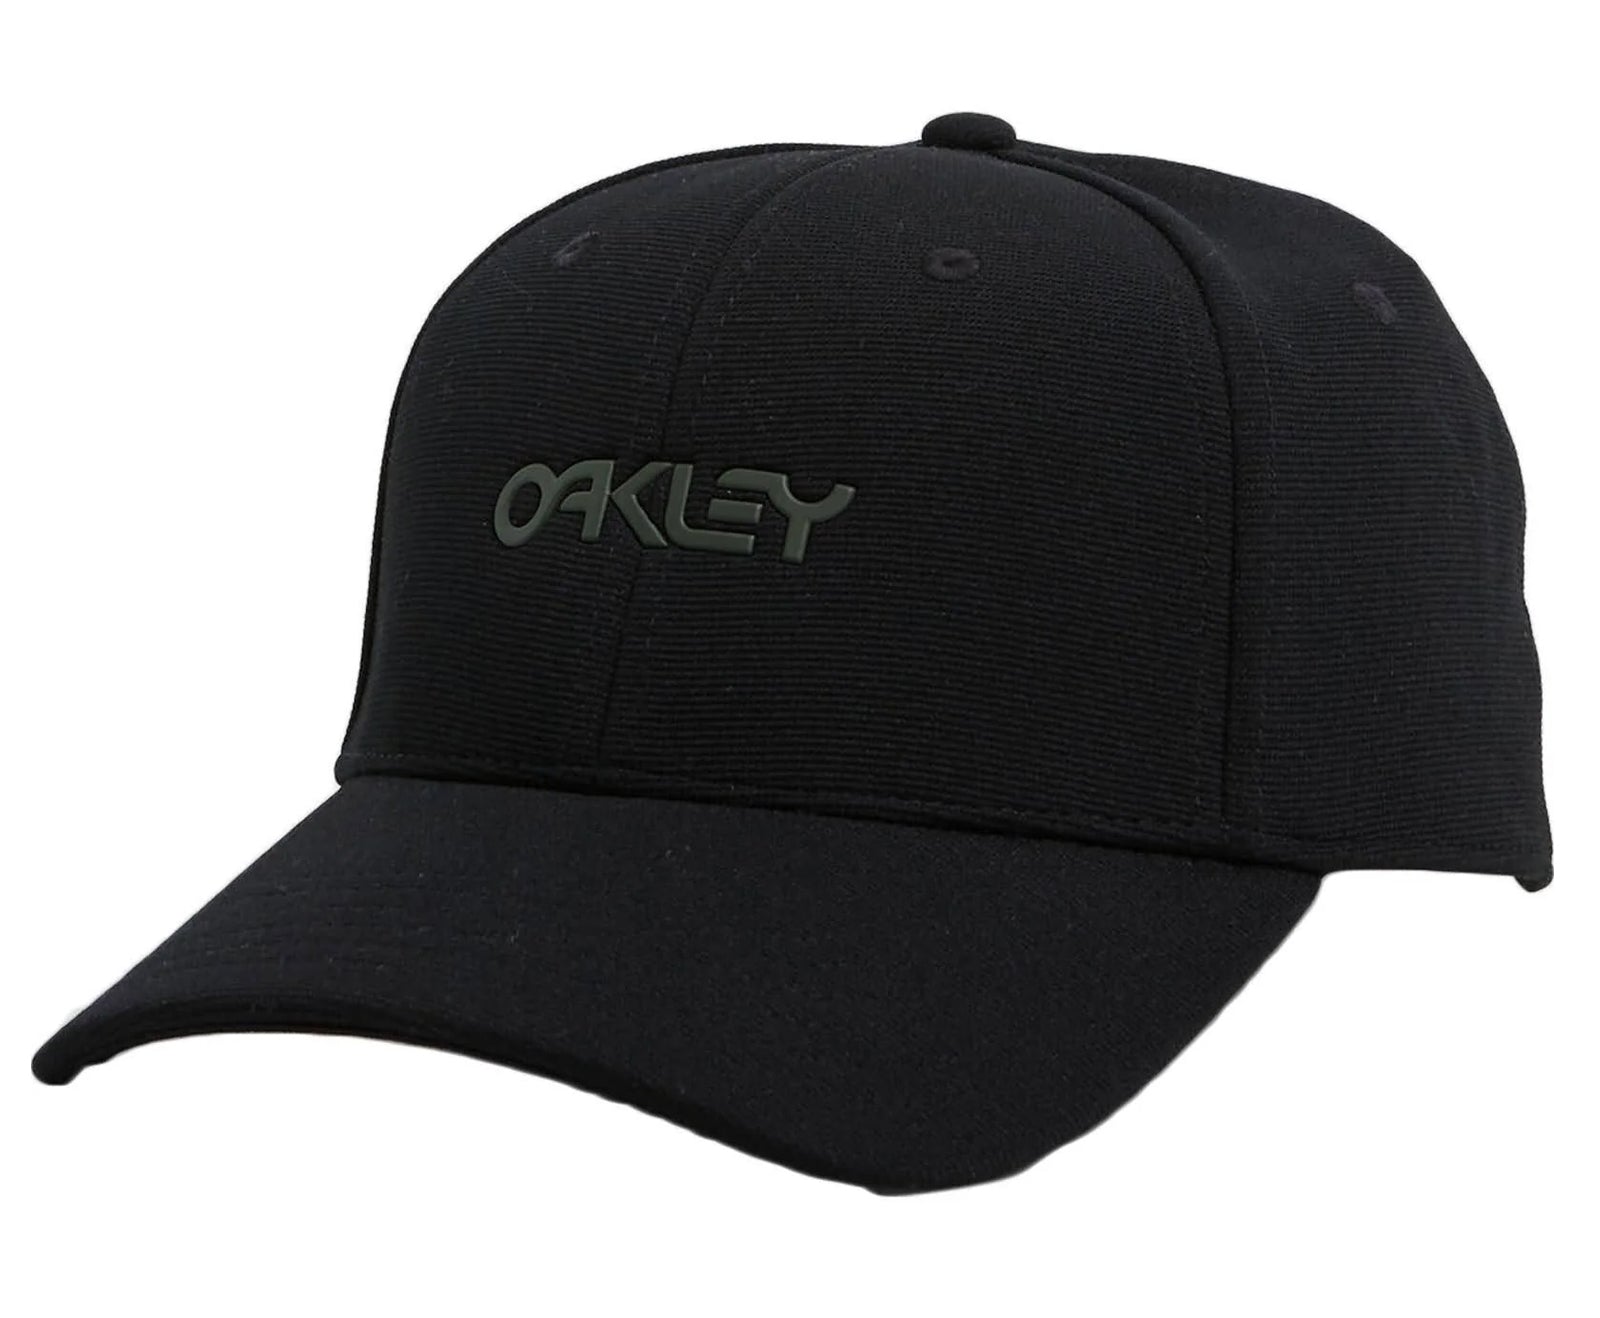 Oakley 6 Panel Stretch Metallic Women's Flexfit Hats